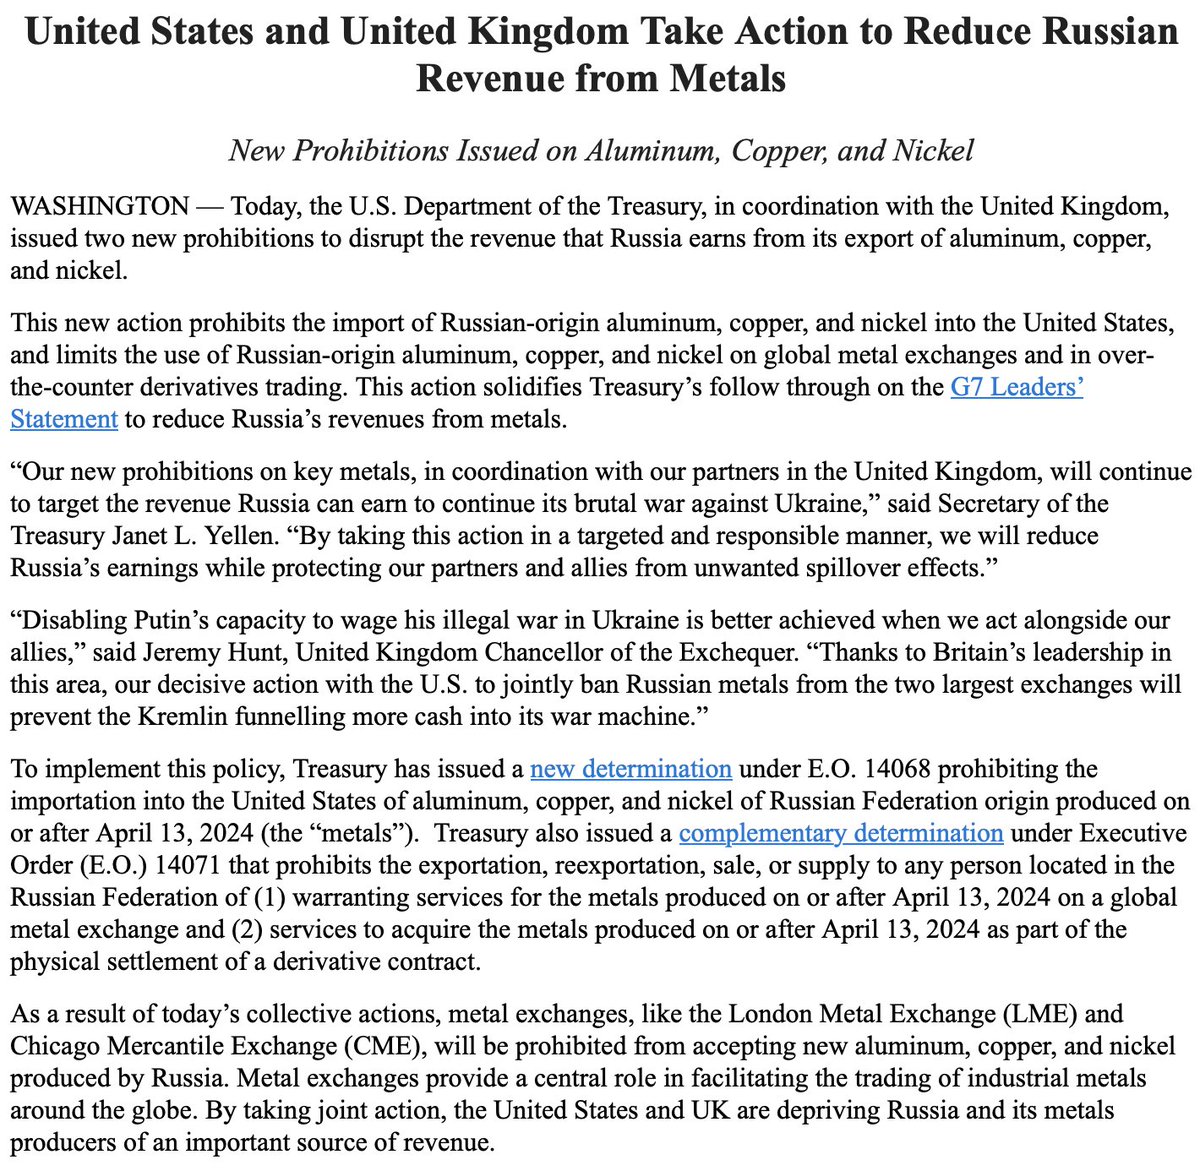 ארהב, בריטניה הגבילו את יצוא המתכות הרוסי, - @USTreasury, פקידים בריטיים מוציאים איסורים חדשים על אלומיניום, נחושת וניקל ממוצא רוסי